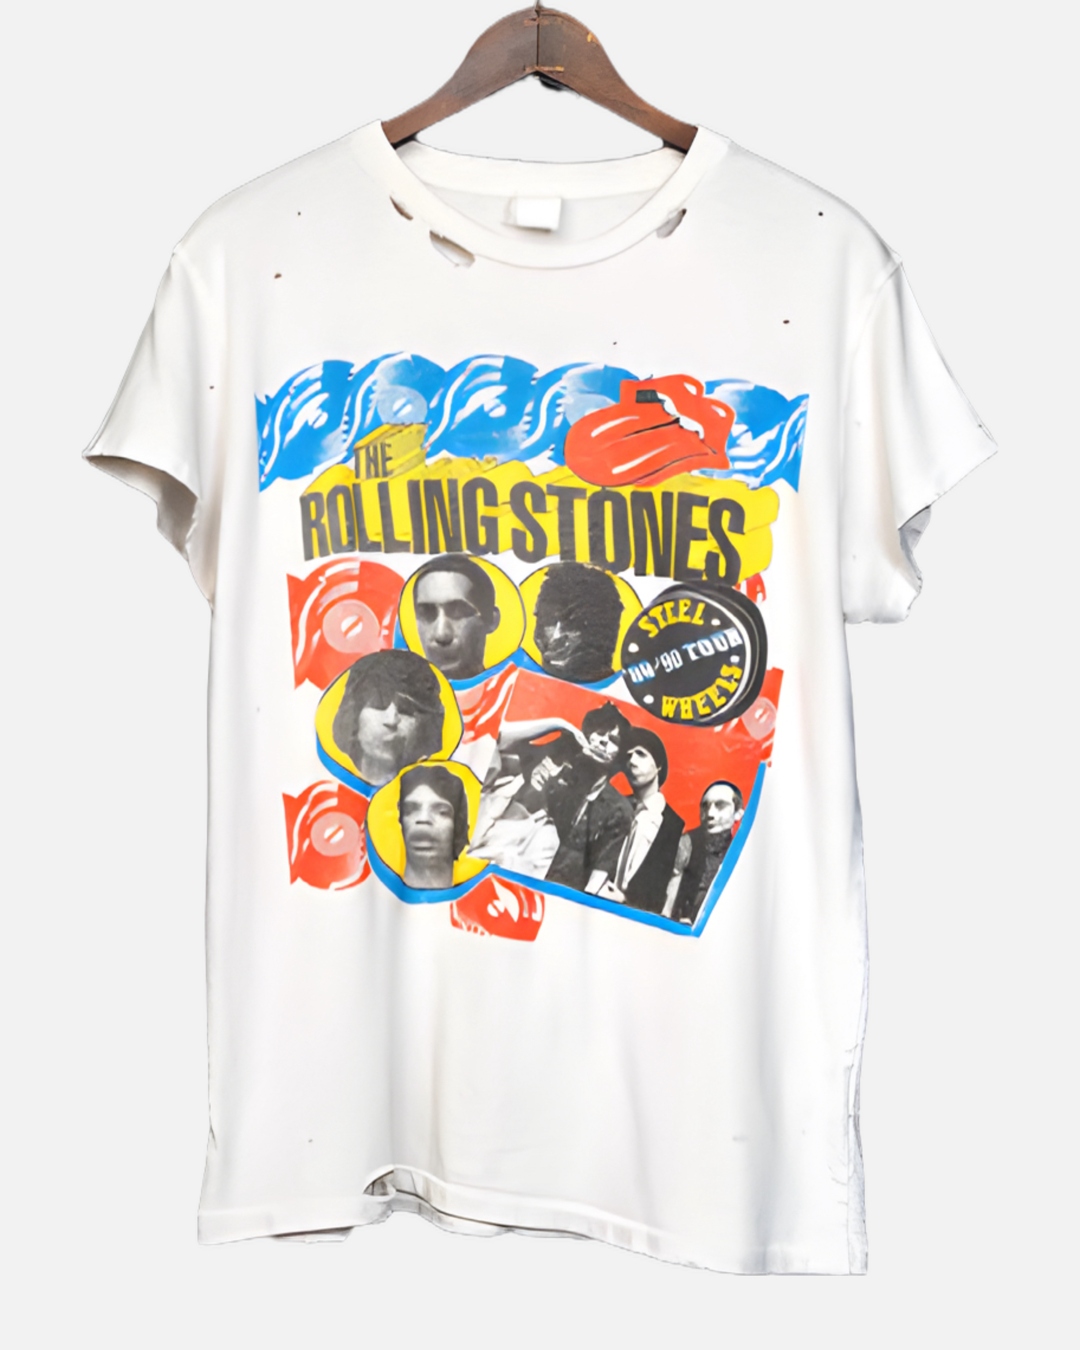 Rolling Stones tee